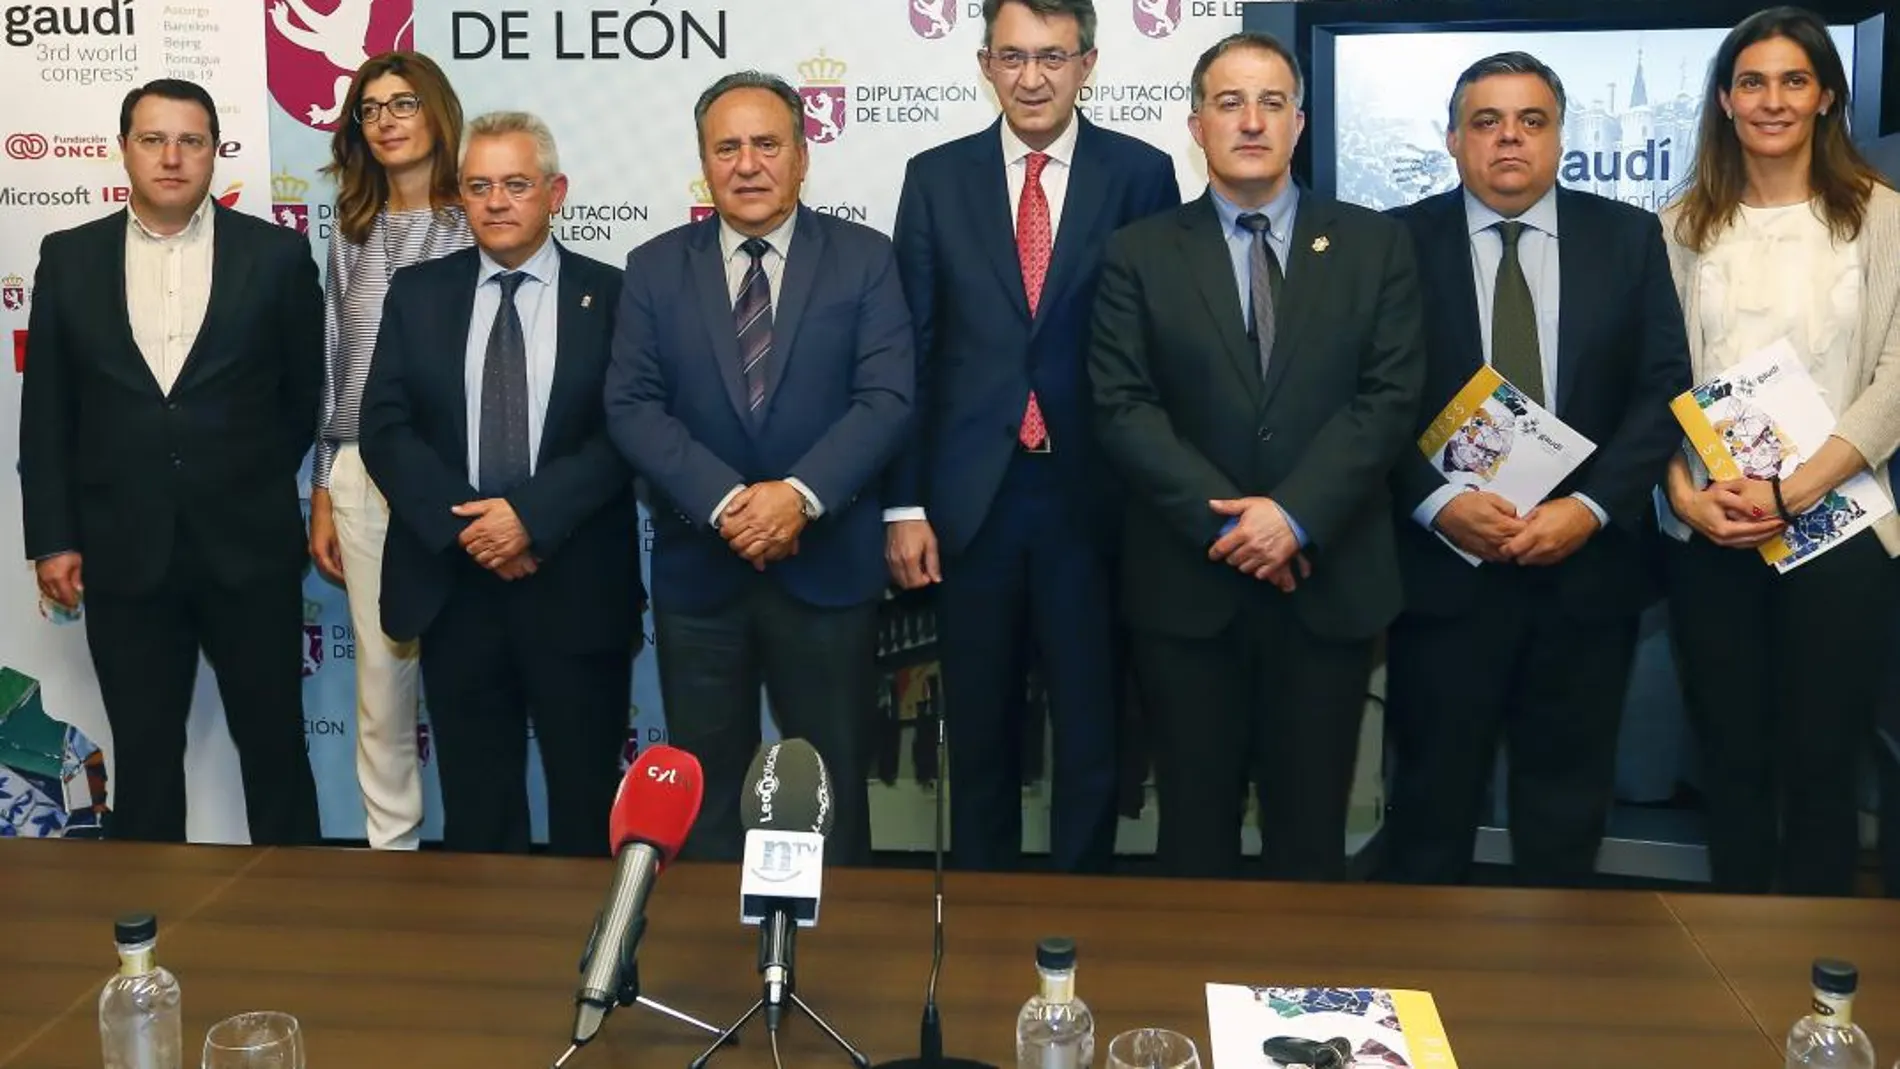 El presidente de la Diputación de León, Juan Martínez Majo, el alcalde de Astorga, Arsenio García, y diferentes expertos presentan el III Congreso Mundial de Gaudí, que se celebrará en Astorga